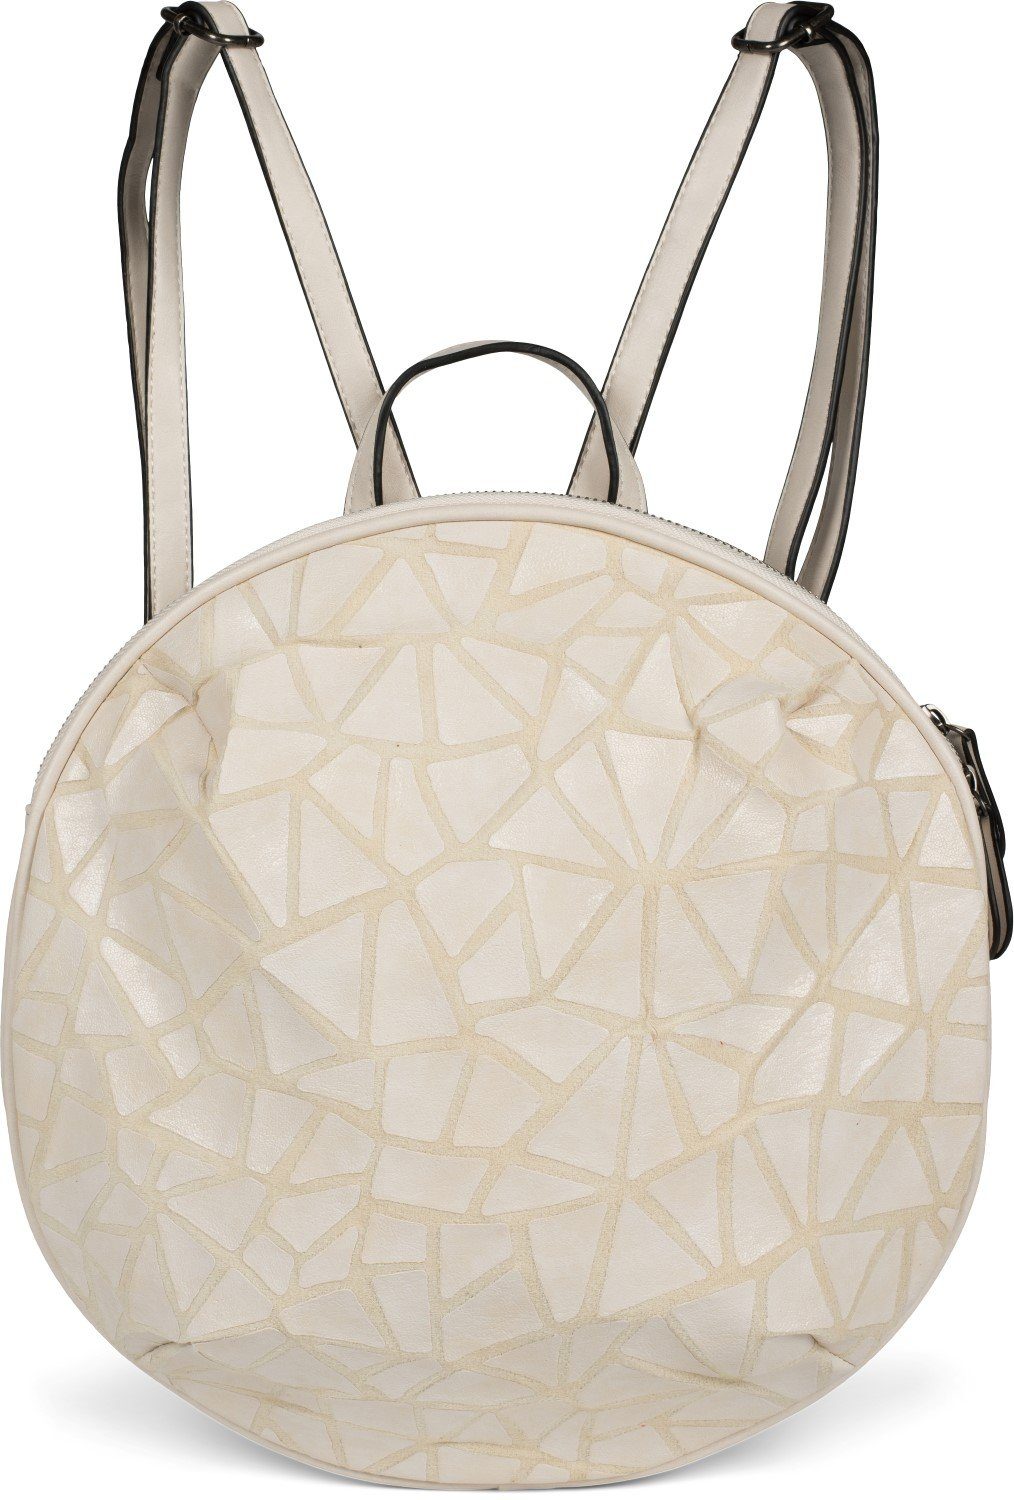 styleBREAKER Daypack, Rucksack Handtasche Rund Prisma Look online kaufen |  OTTO